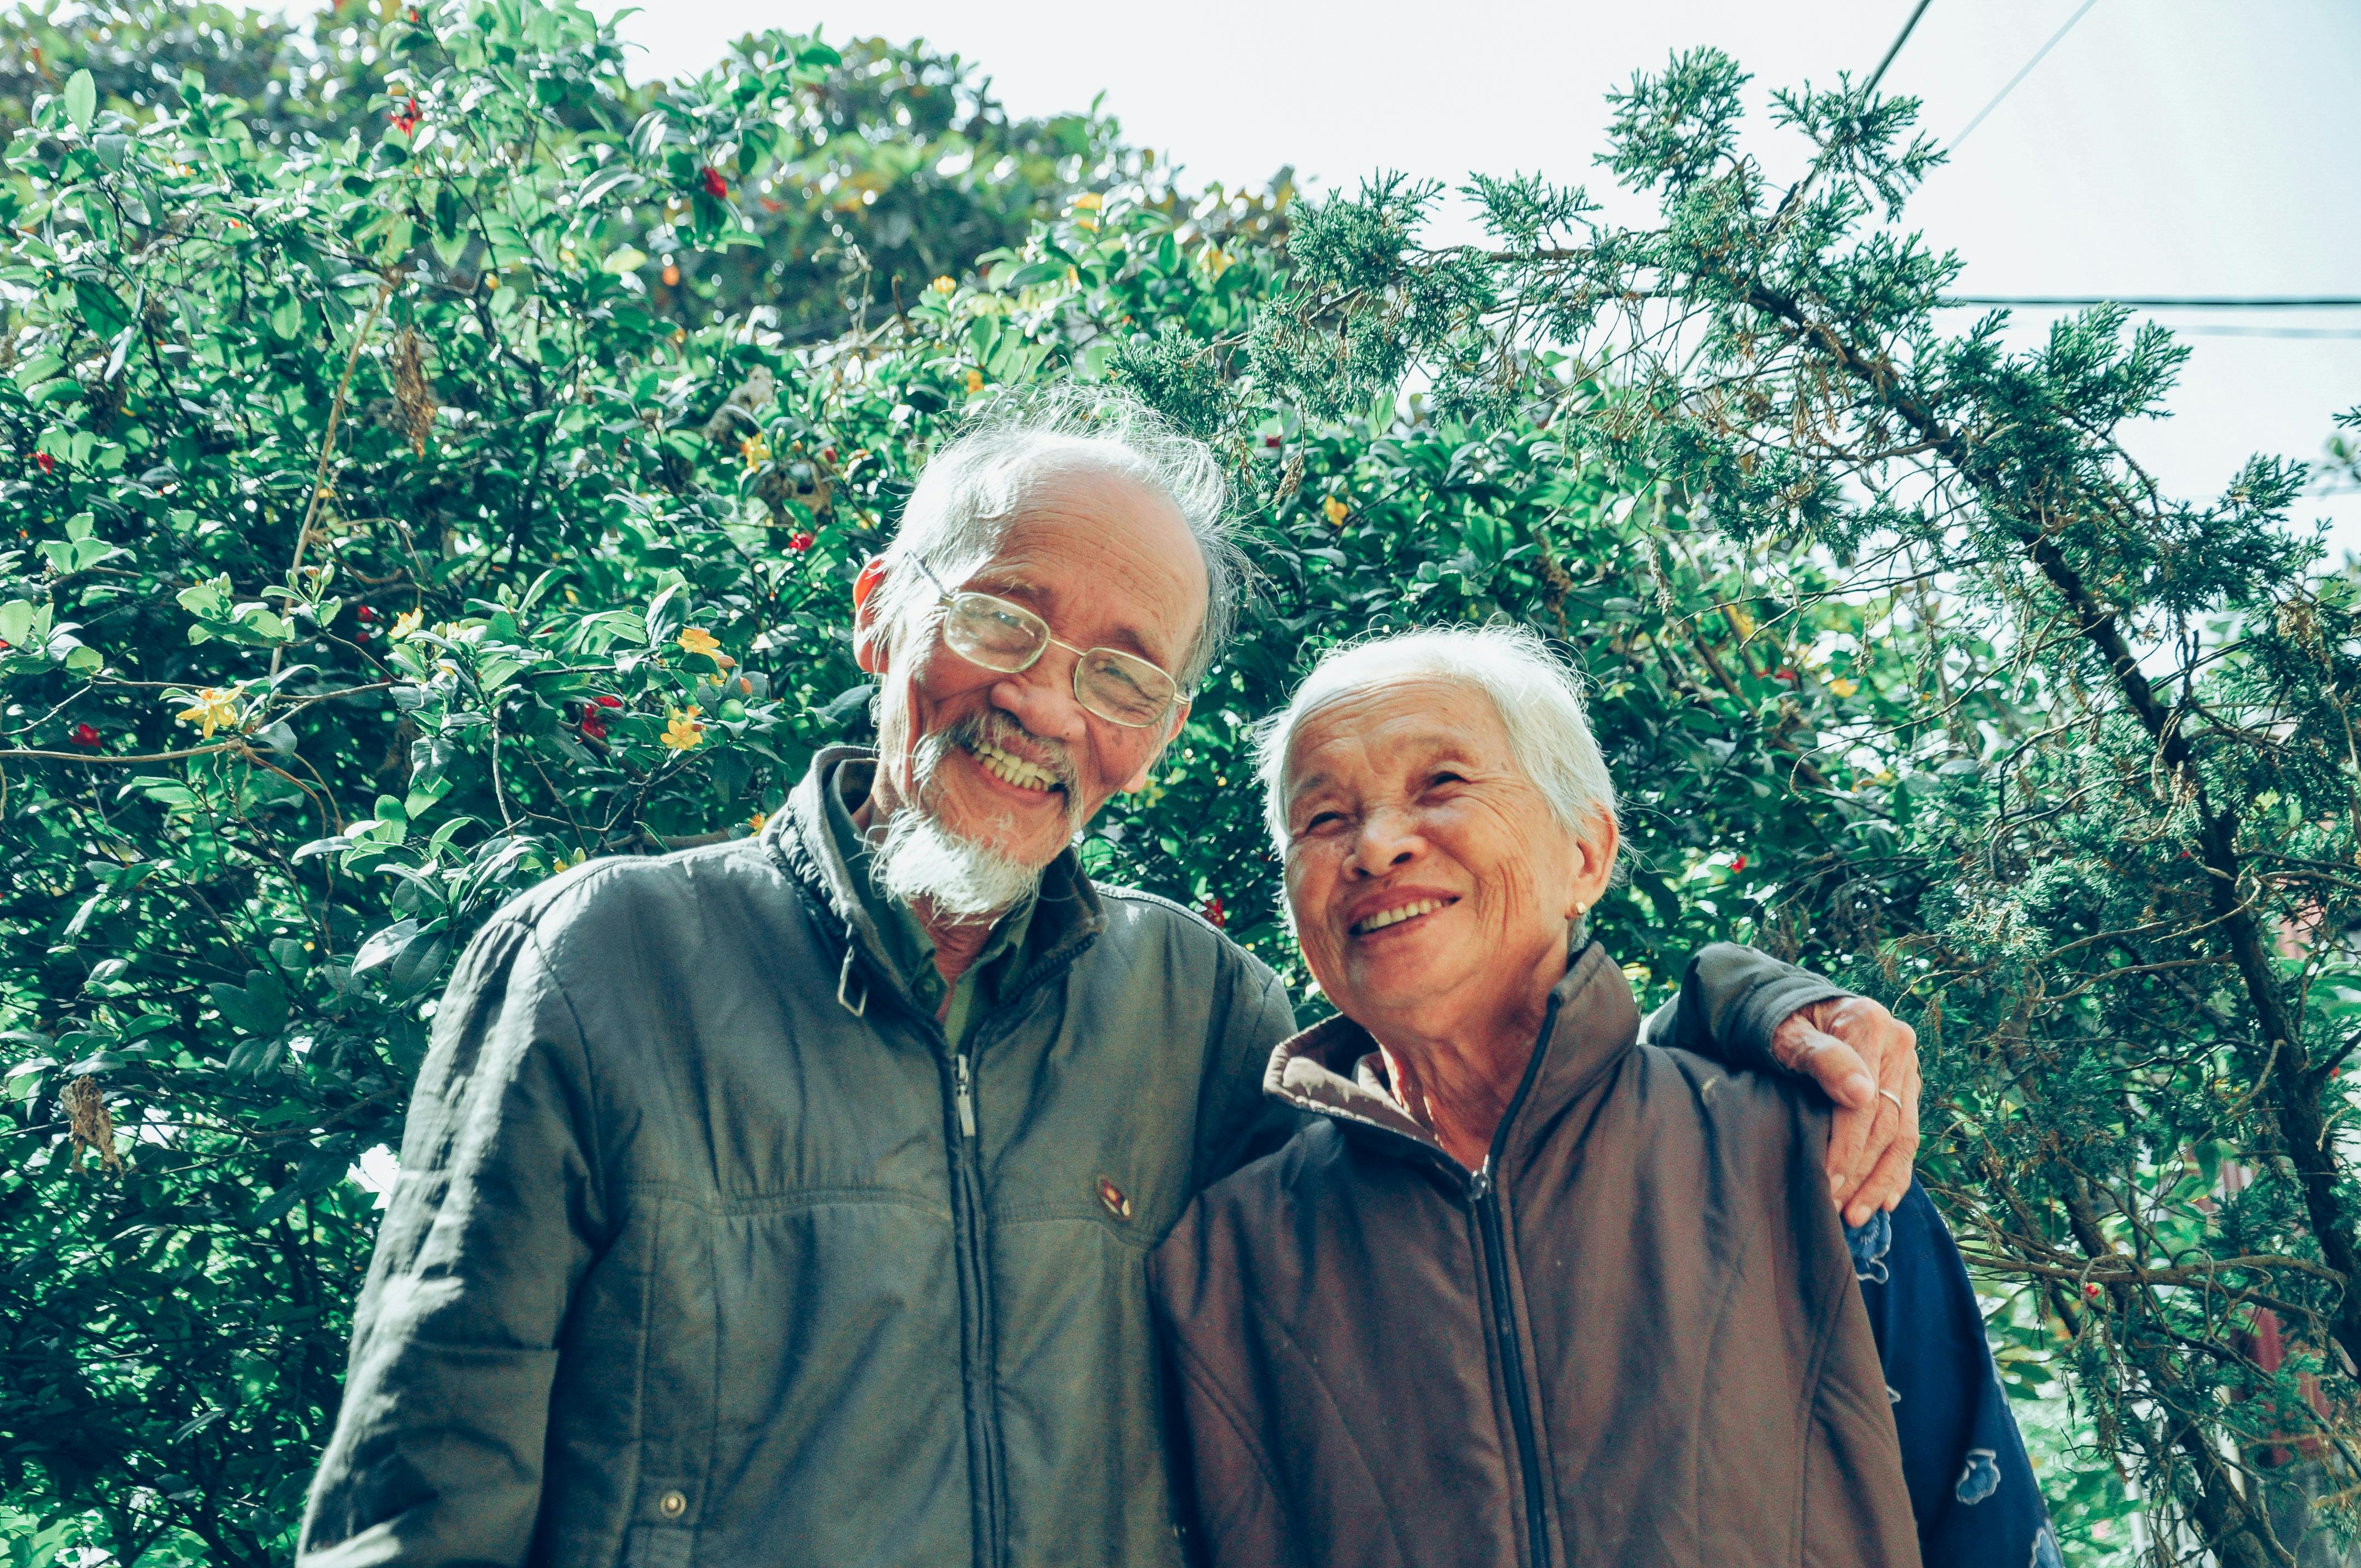 Senior and Elder Care